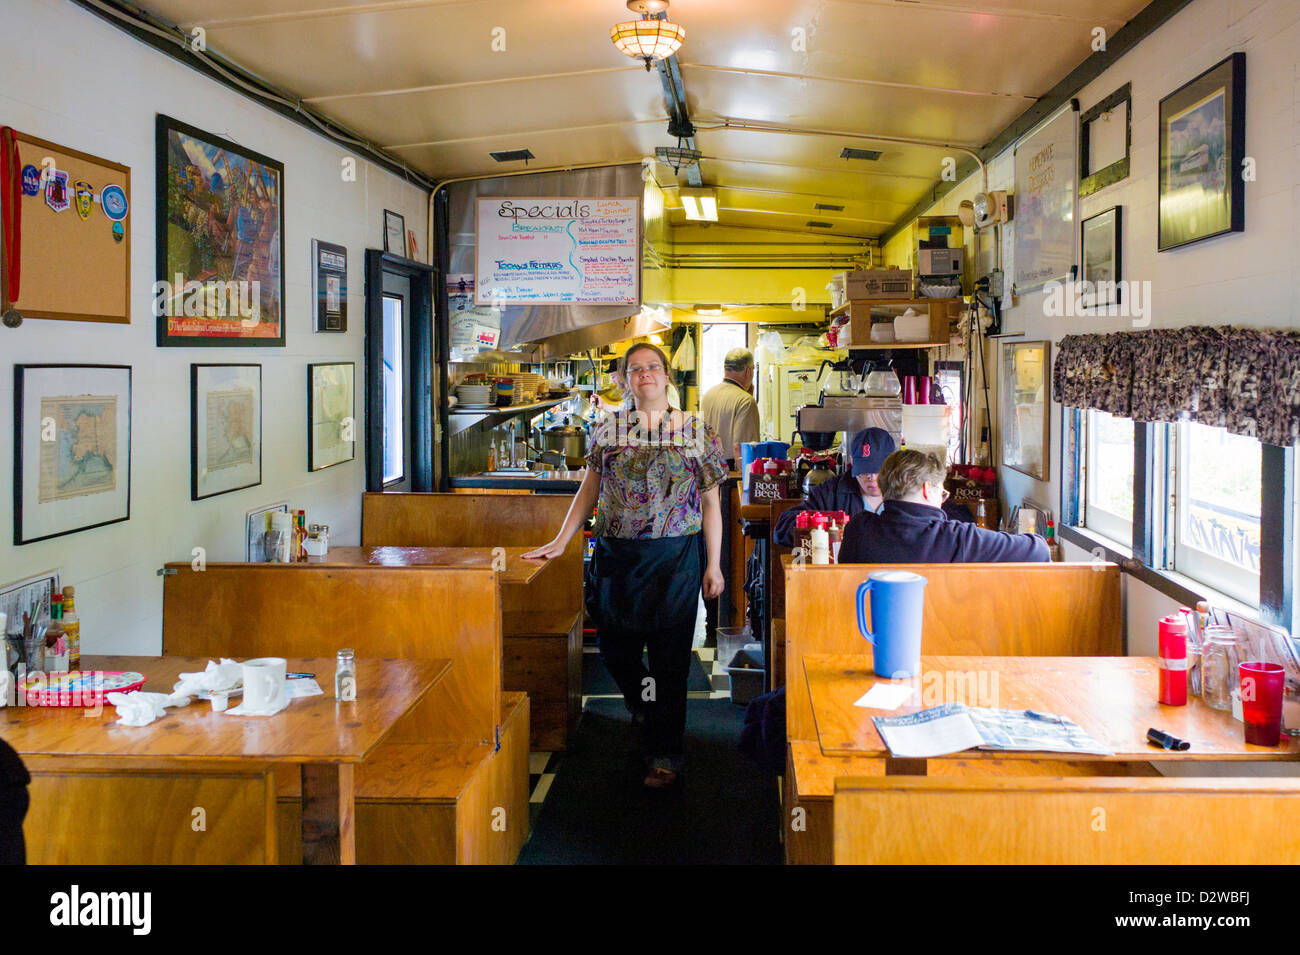 Serveuse pauses pour photographier,vue de l'intérieur de la Cabane de fumée restaurant, situé dans un ancien wagon de chemin de fer, Seward, AK Banque D'Images